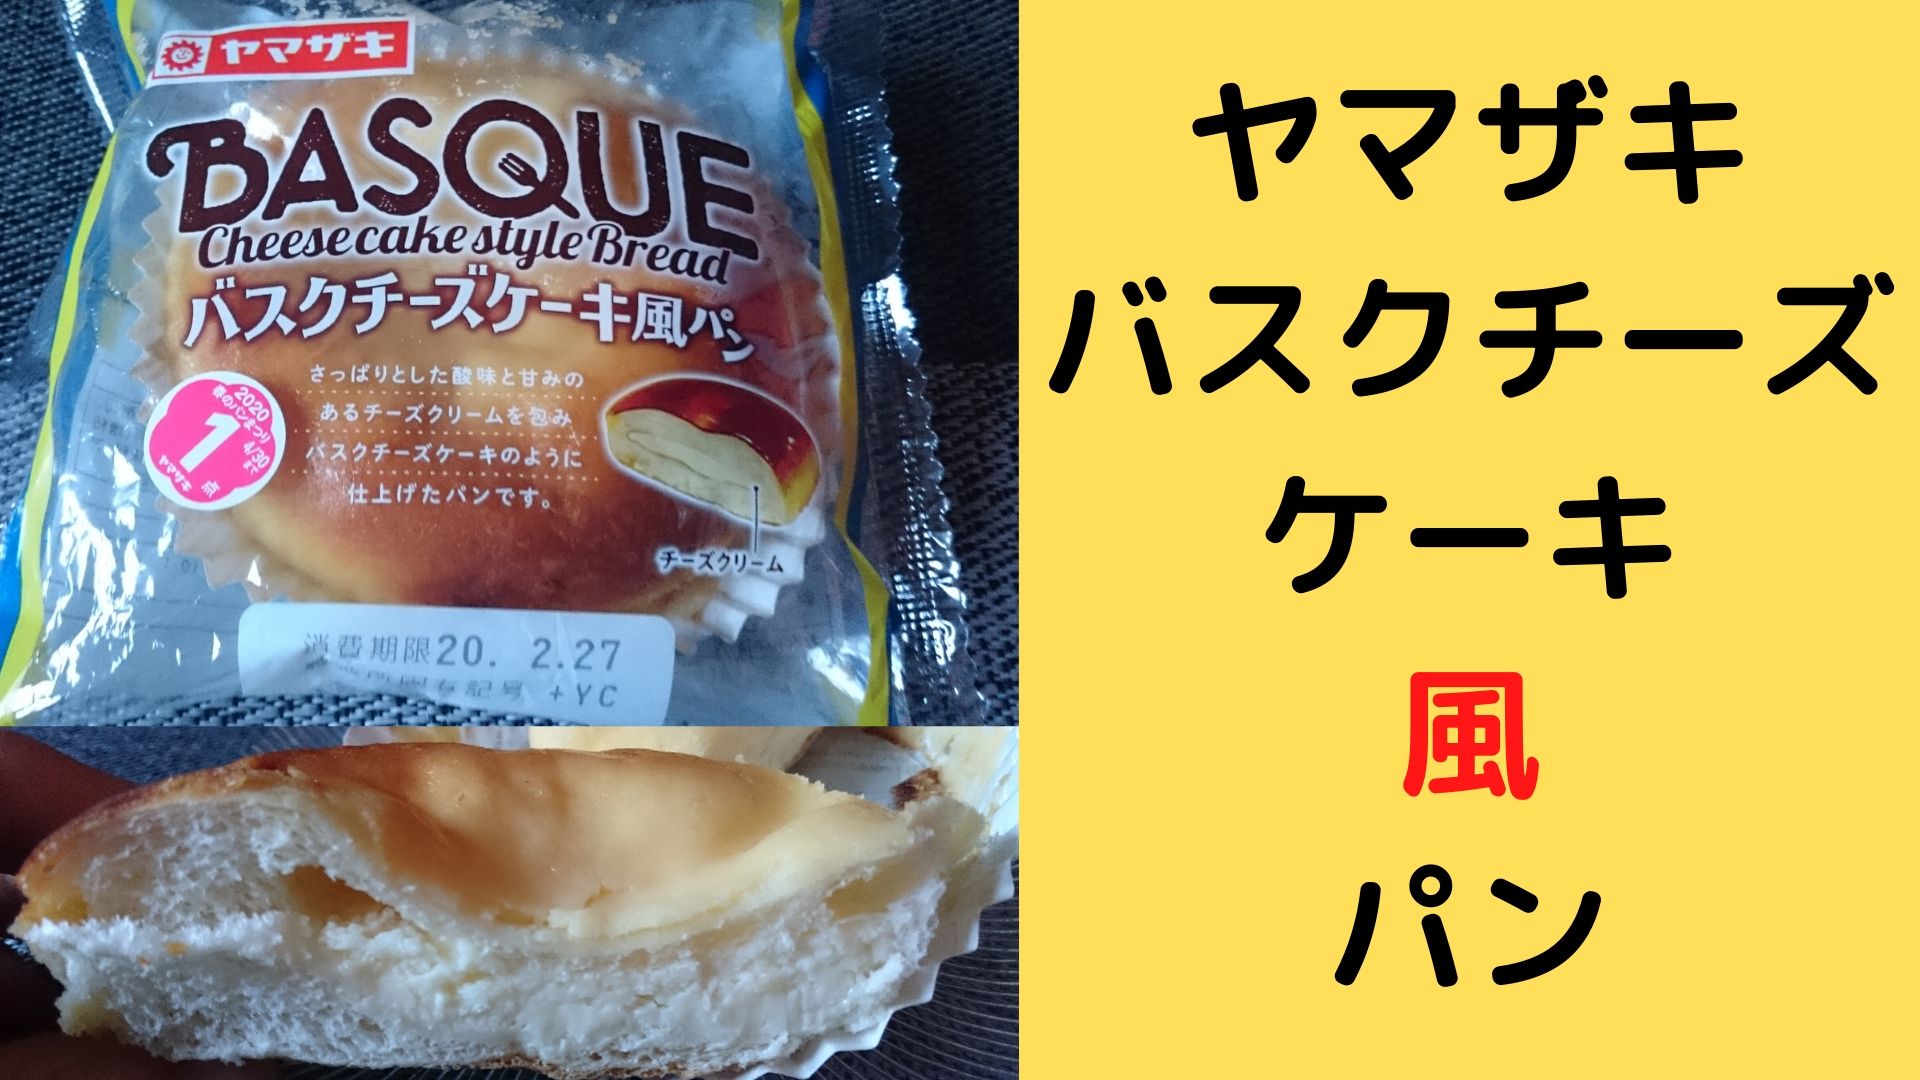 ヤマザキ バスクチーズケーキ風パンいただいてみた 春のパンまつりも開催中 さっぱりチーズケーキ風の菓子パン めっけたブログ